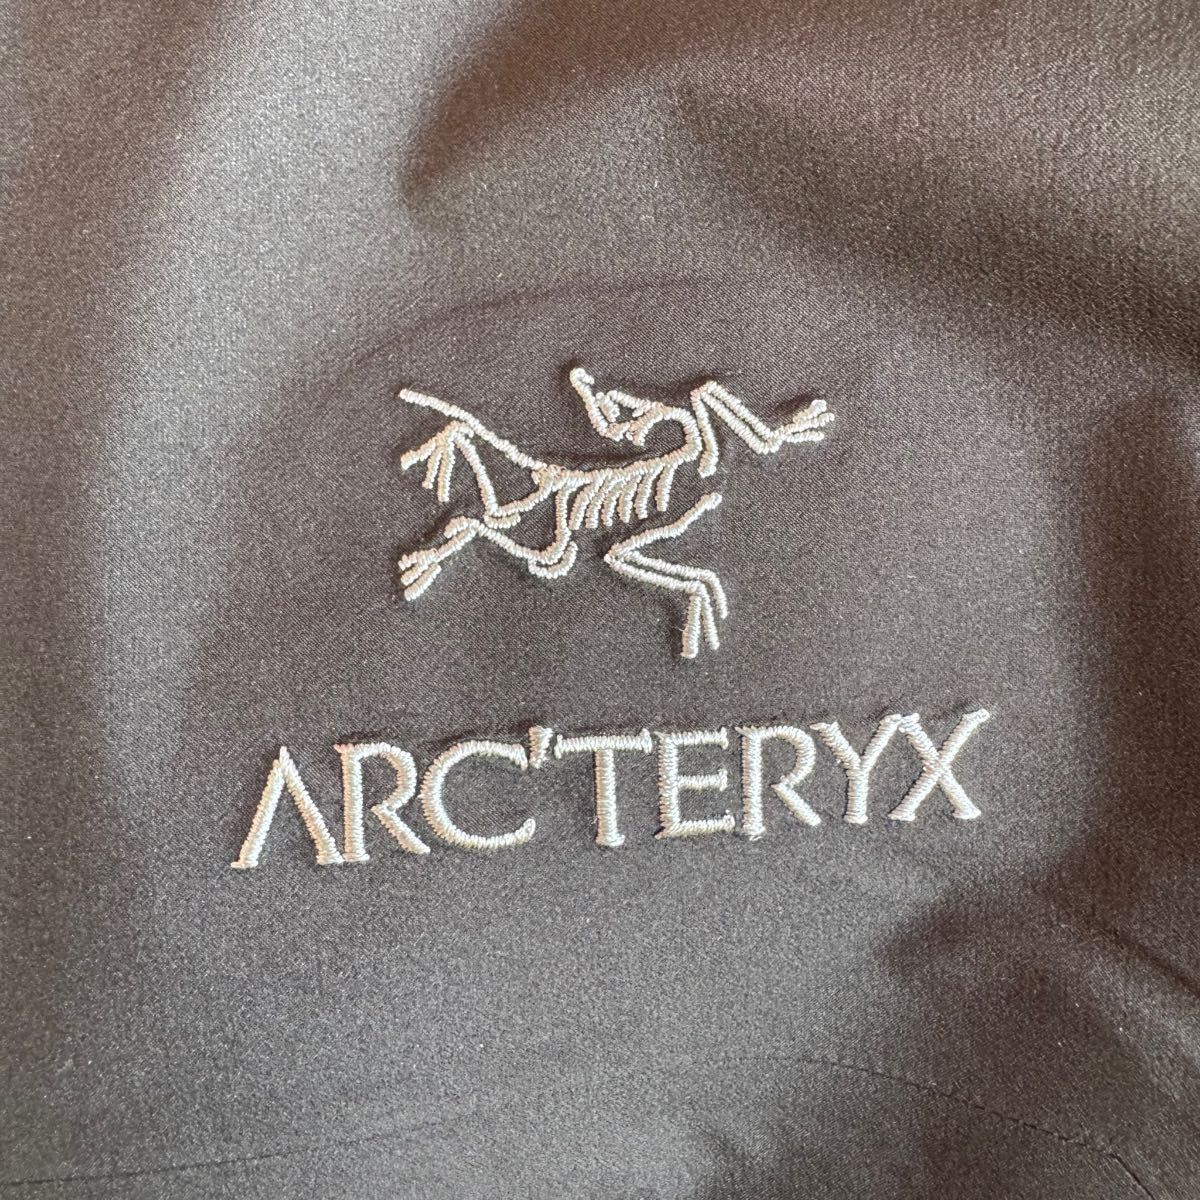 Arc’teryx アークテリクス beta jacket ベータ ジャケット M BLACK 黒 ブラック 新品未使用品